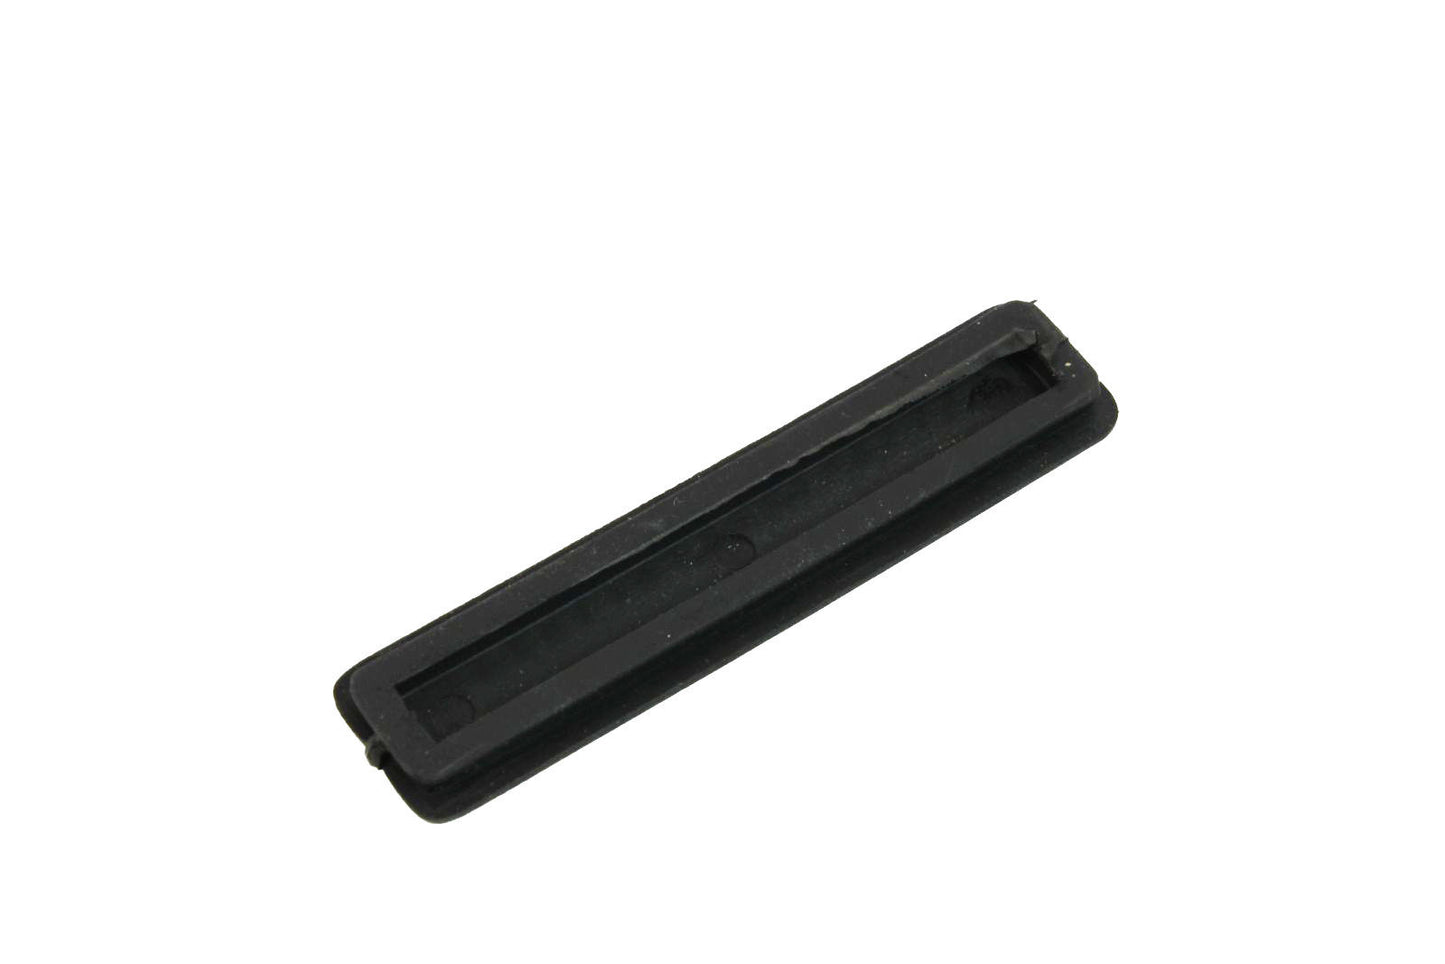 Premium AUG Ejection Port Cover - Black